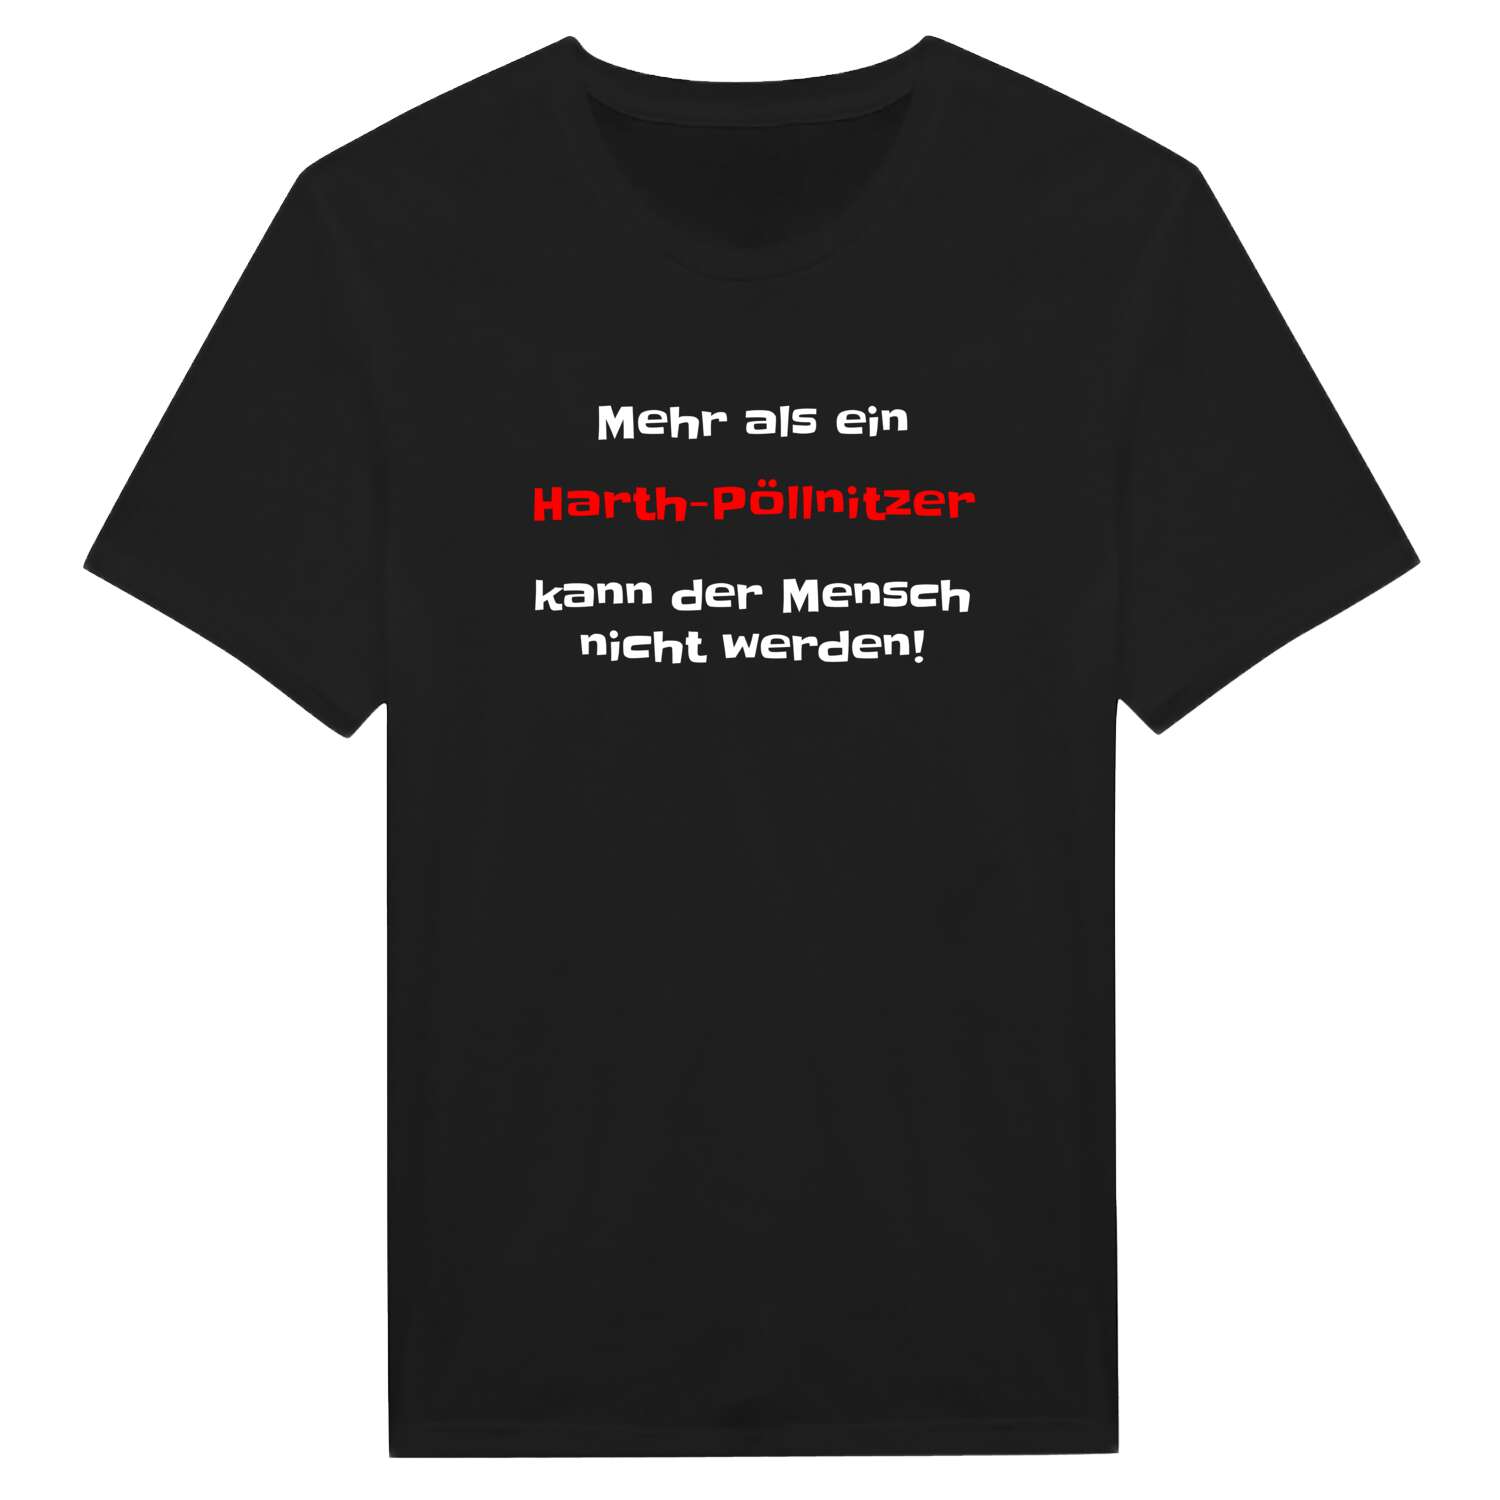 Harth-Pöllnitz T-Shirt »Mehr als ein«